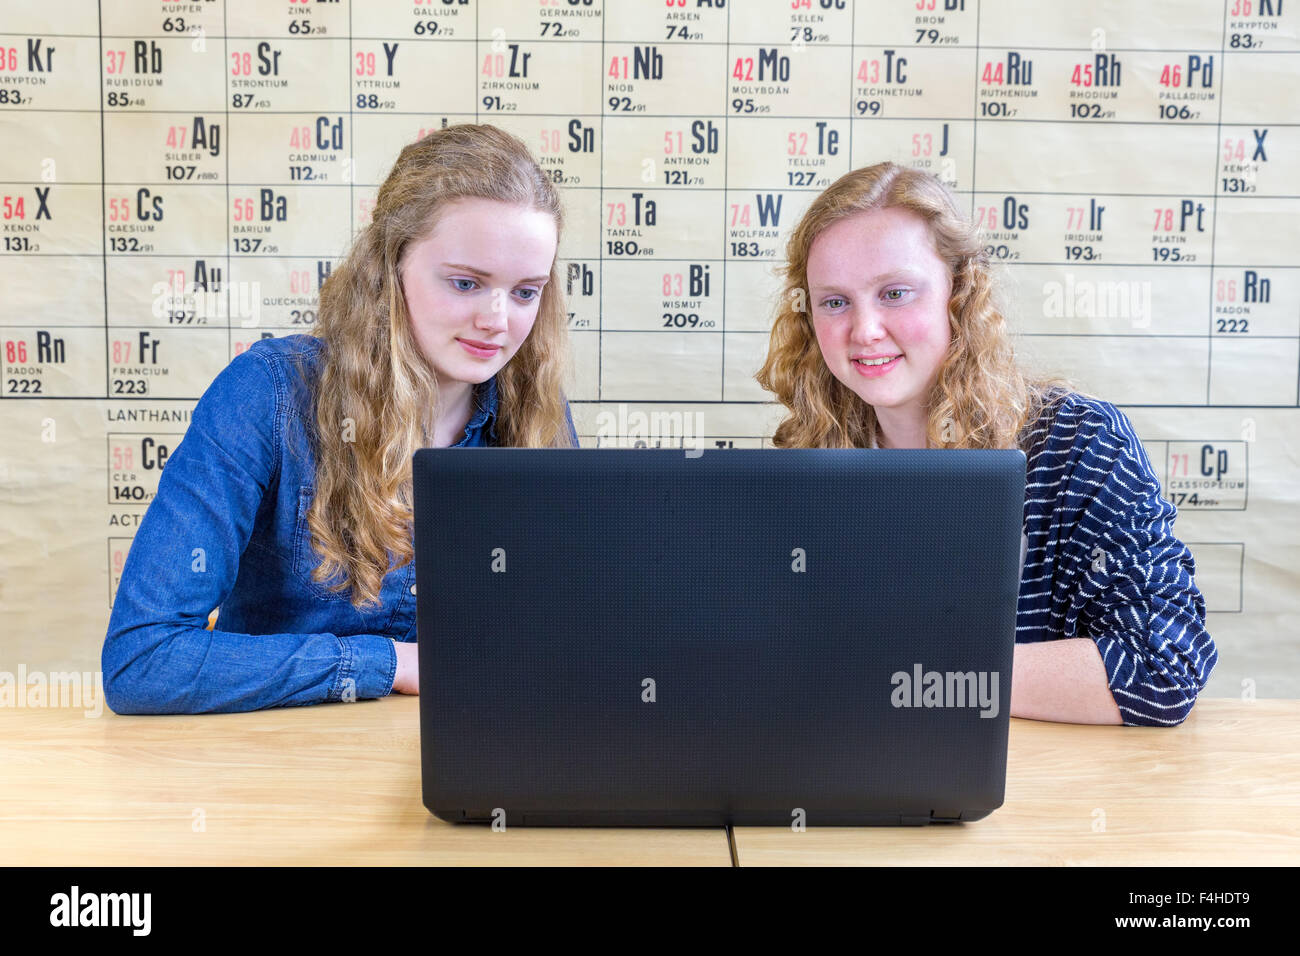 Zwei kaukasische Mädchen im Teenageralter Blick auf Laptop im Chemieunterricht vor Schautafel zeigt Periodensystem Stockfoto